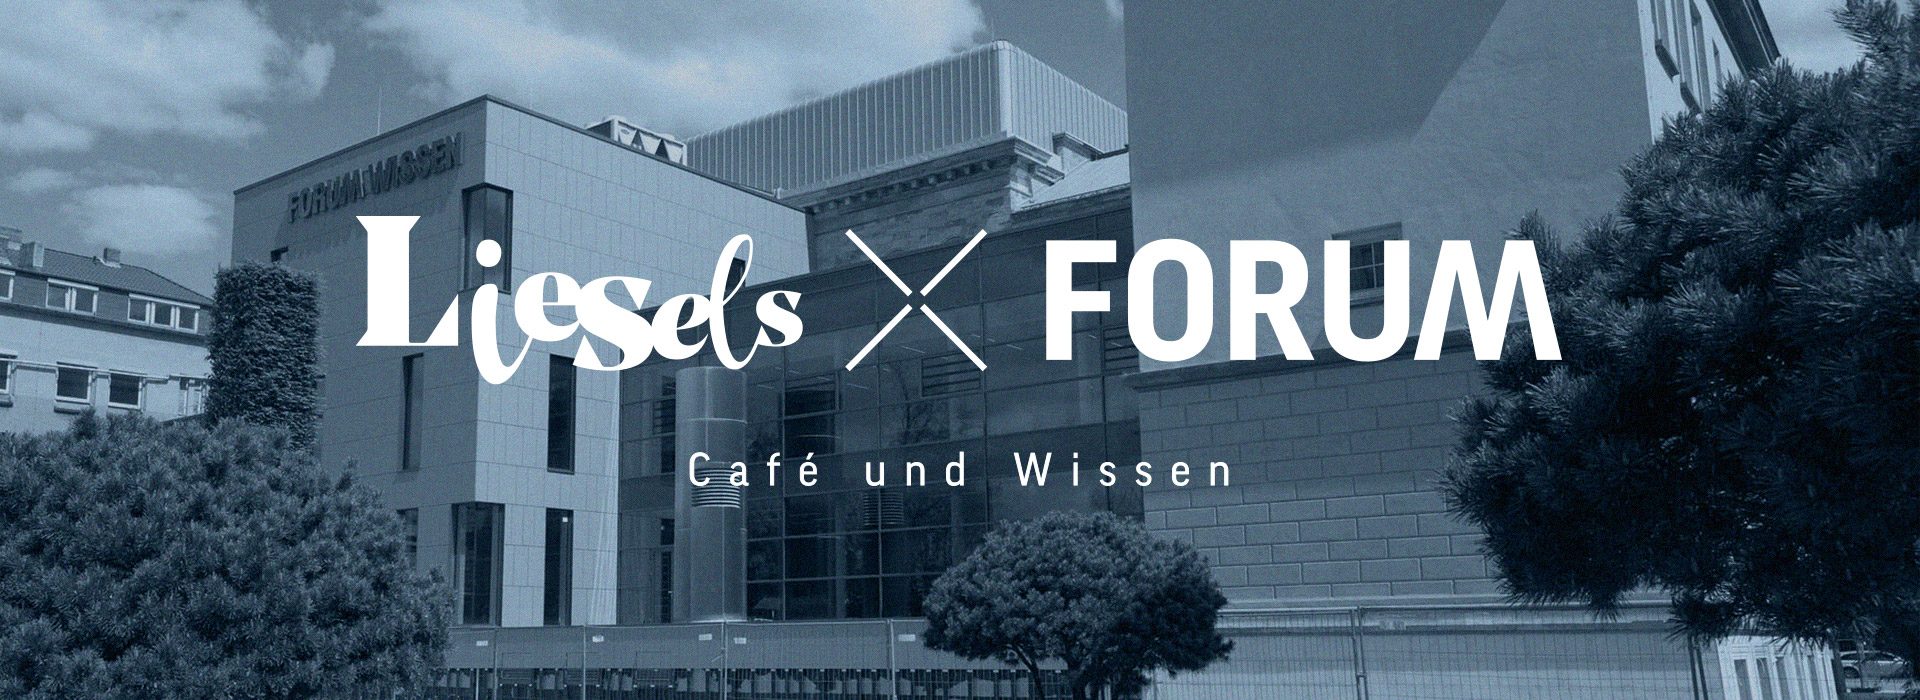 Das neue Cafe Liesels X Forum im Forum Wissen Göttingen